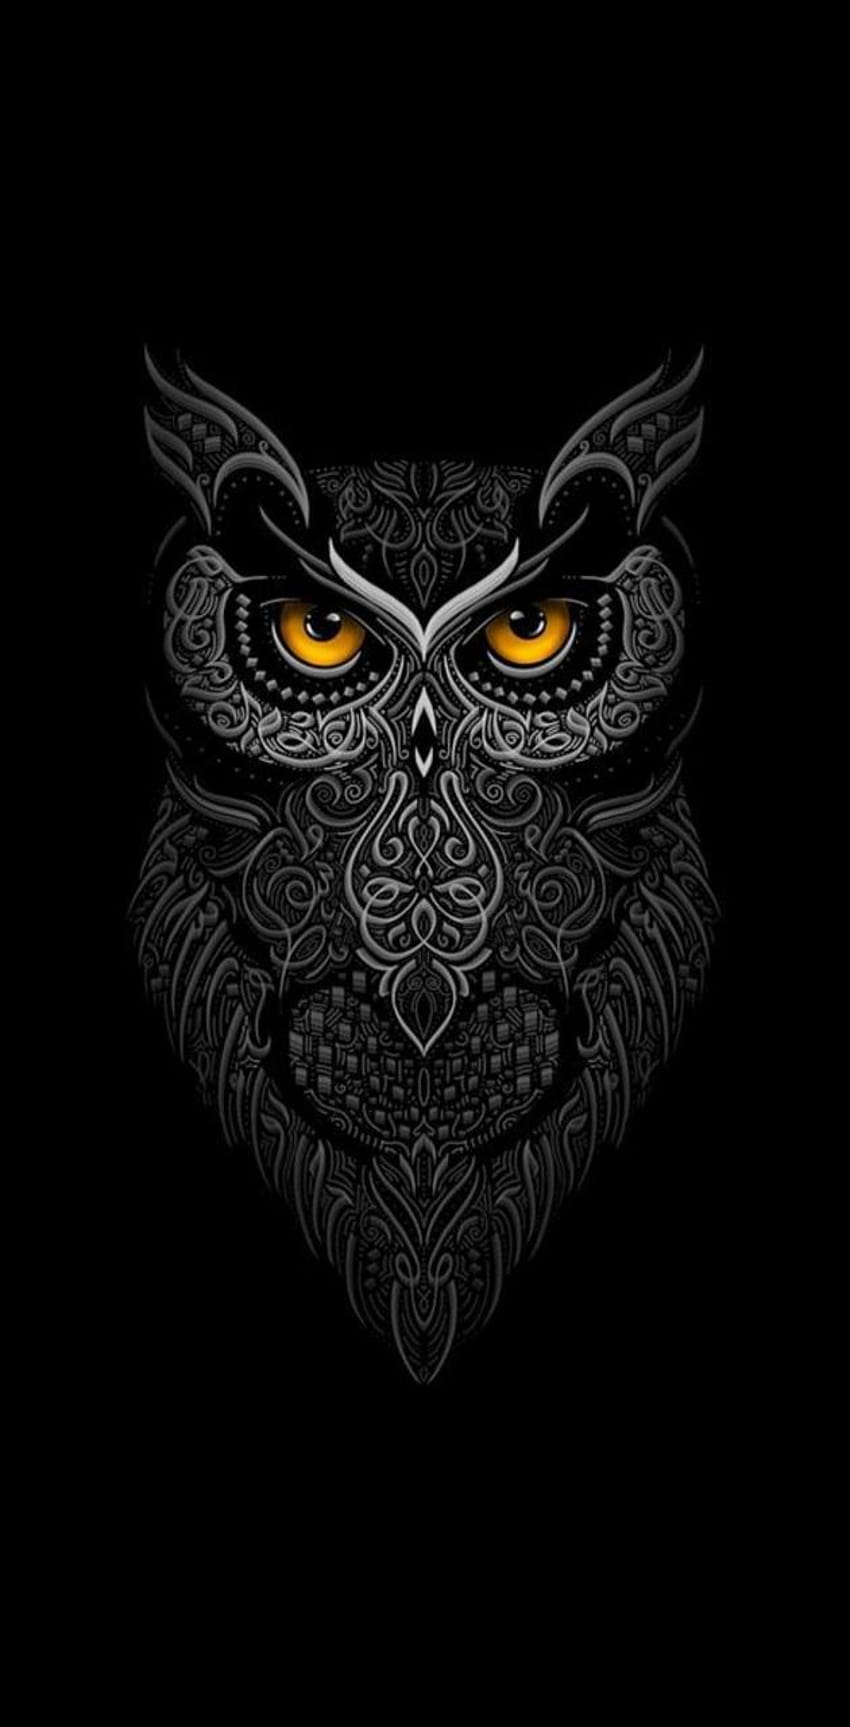 Owl oleh Odysseon, logo burung hantu wallpaper ponsel HD